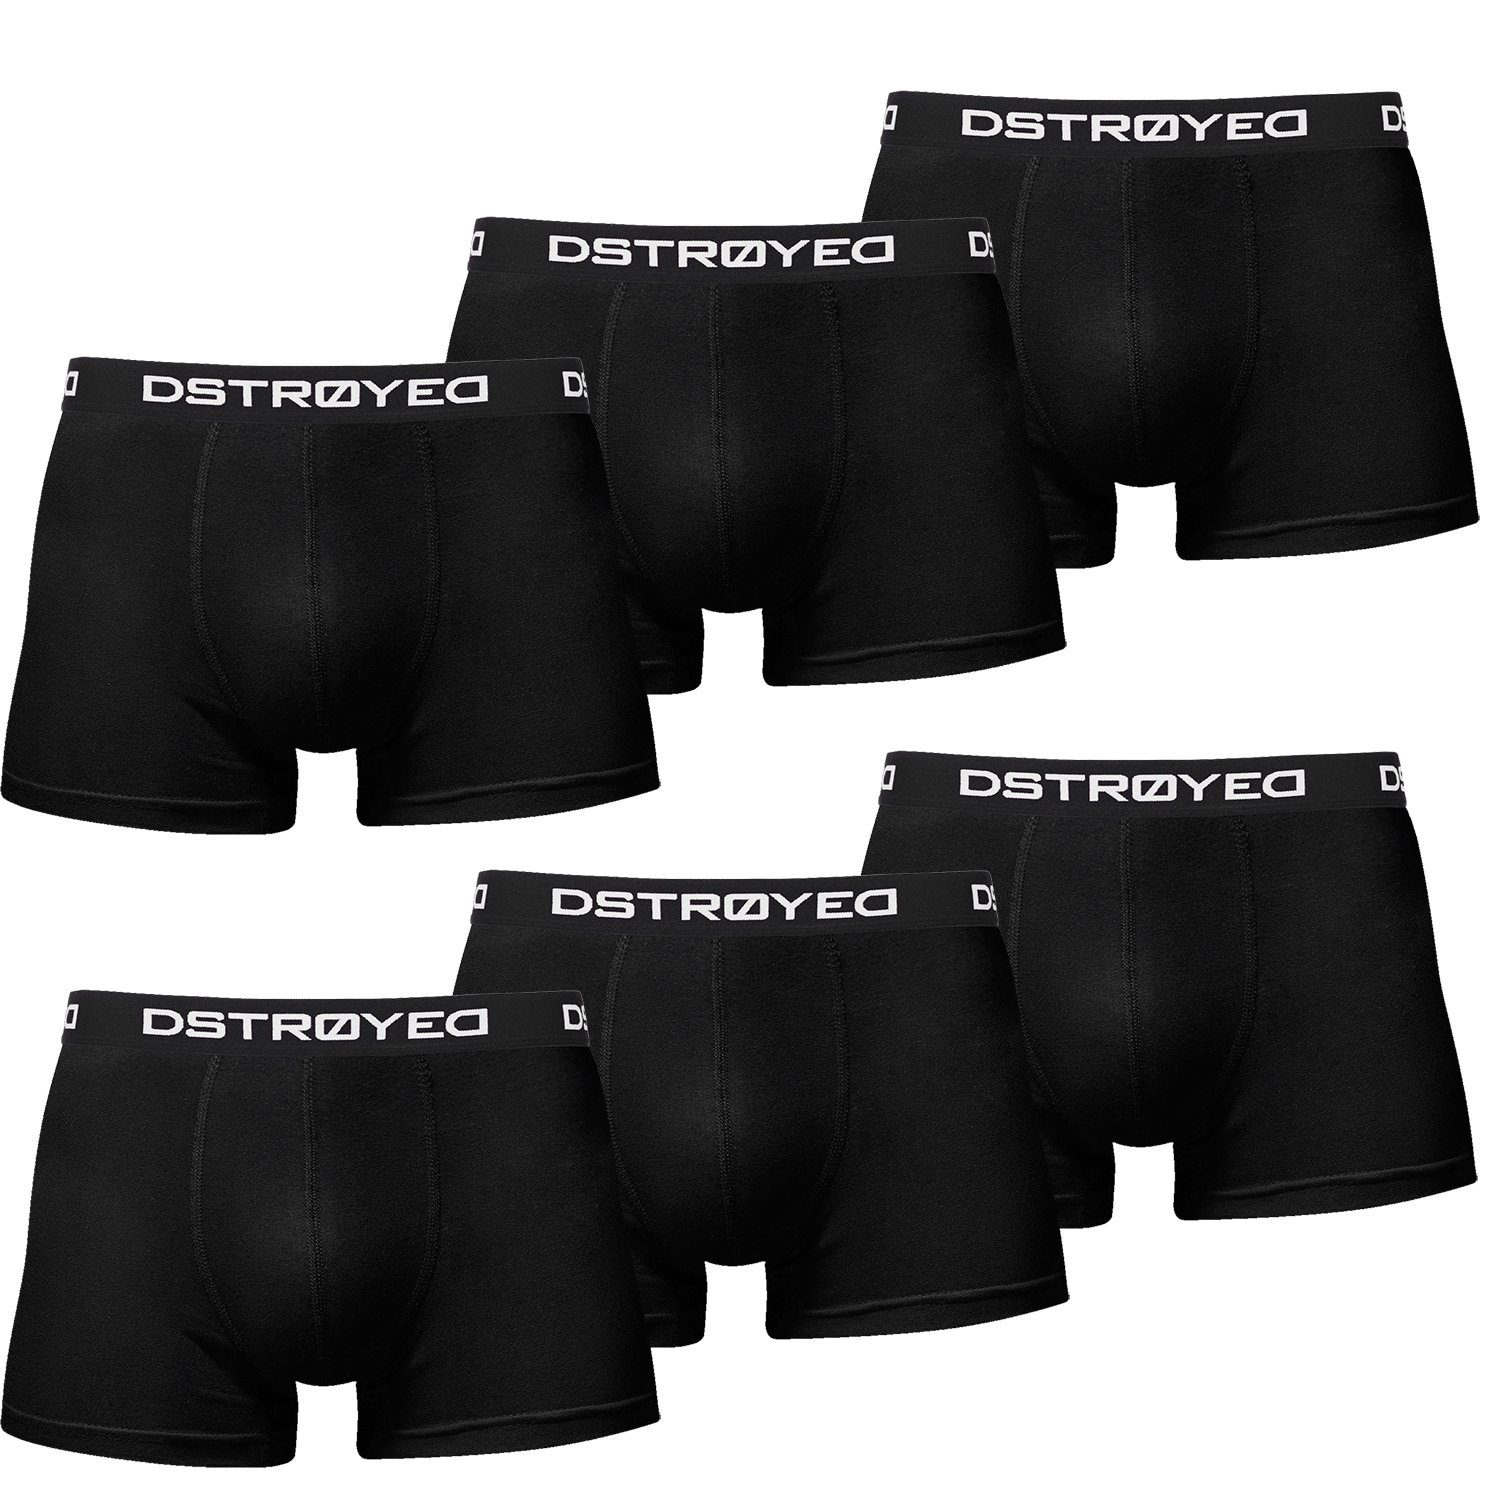 DSTROYED Boxershorts Herren Männer Unterhosen Baumwolle Premium Qualität perfekte Passform (Sparpack, 6er Pack) S - 7XL 607b-schwarz